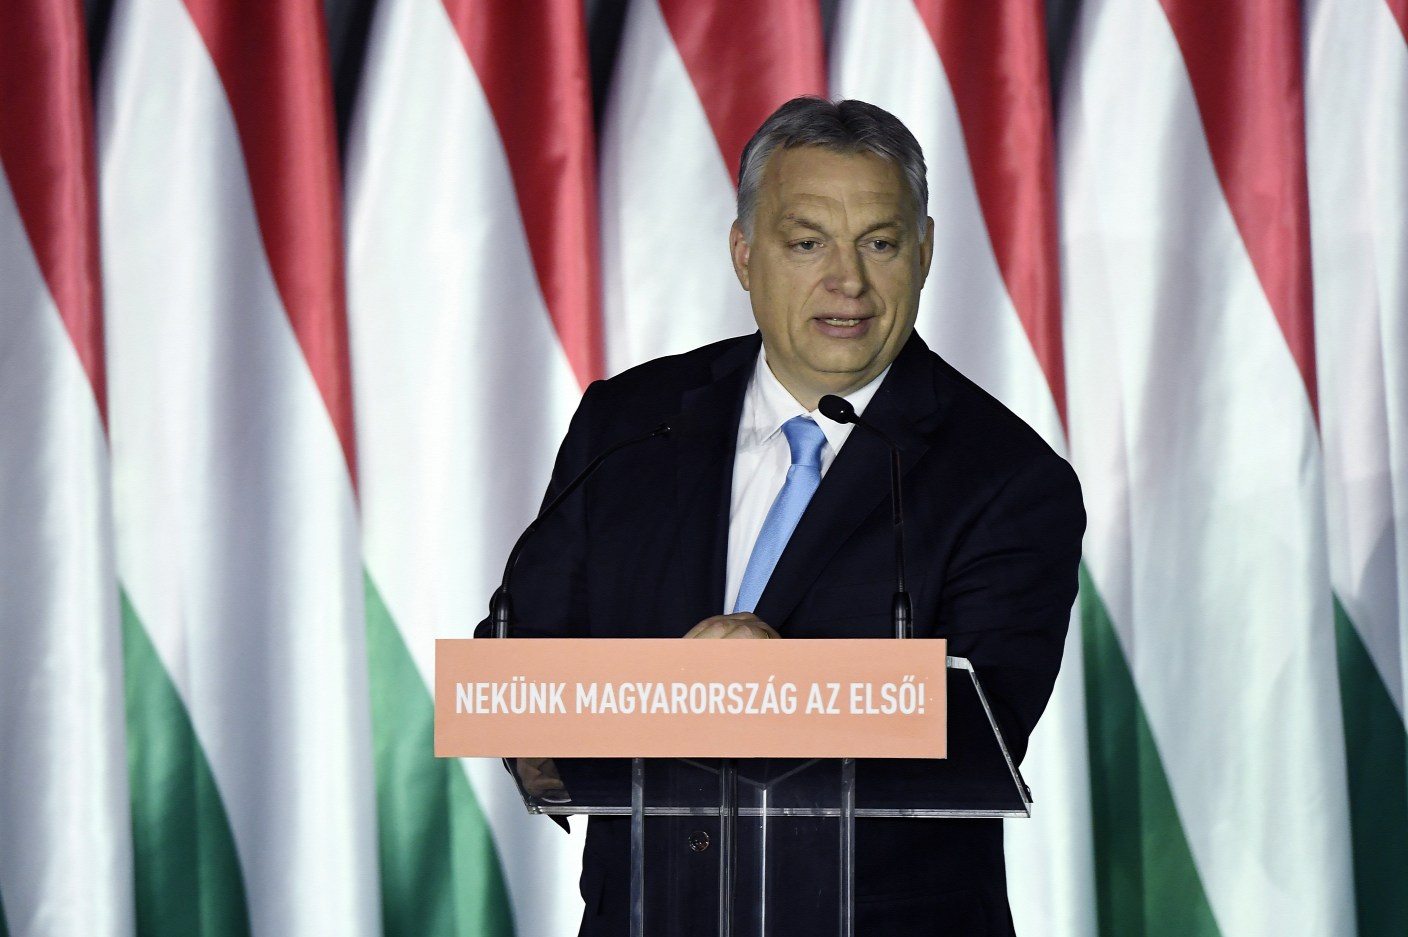 Óriási tömegek Orbán Viktor bevándorlásellenes hét pontja mellett